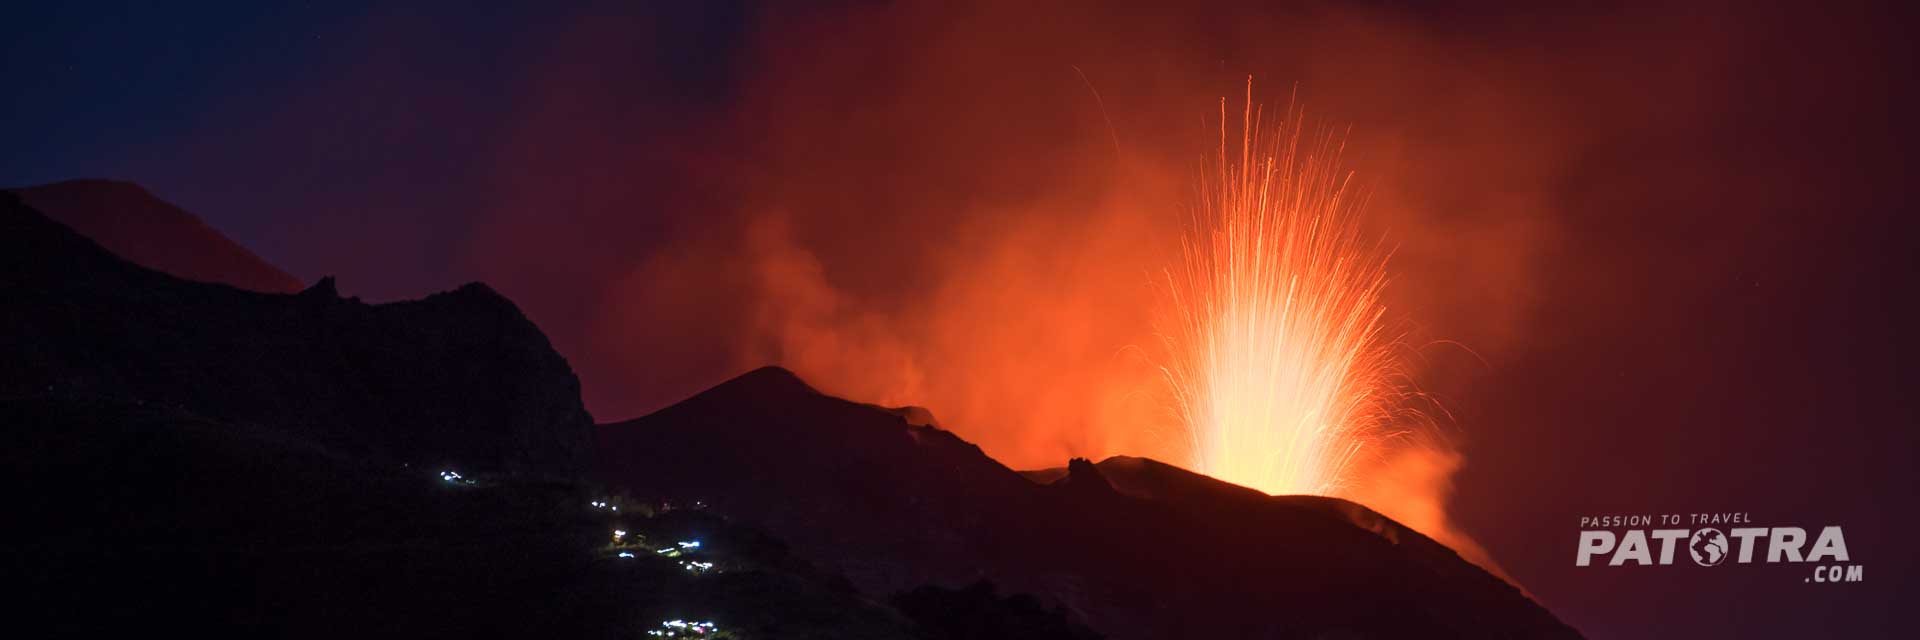 Panorama des Vulkans, der bei Nacht Lava spuckt